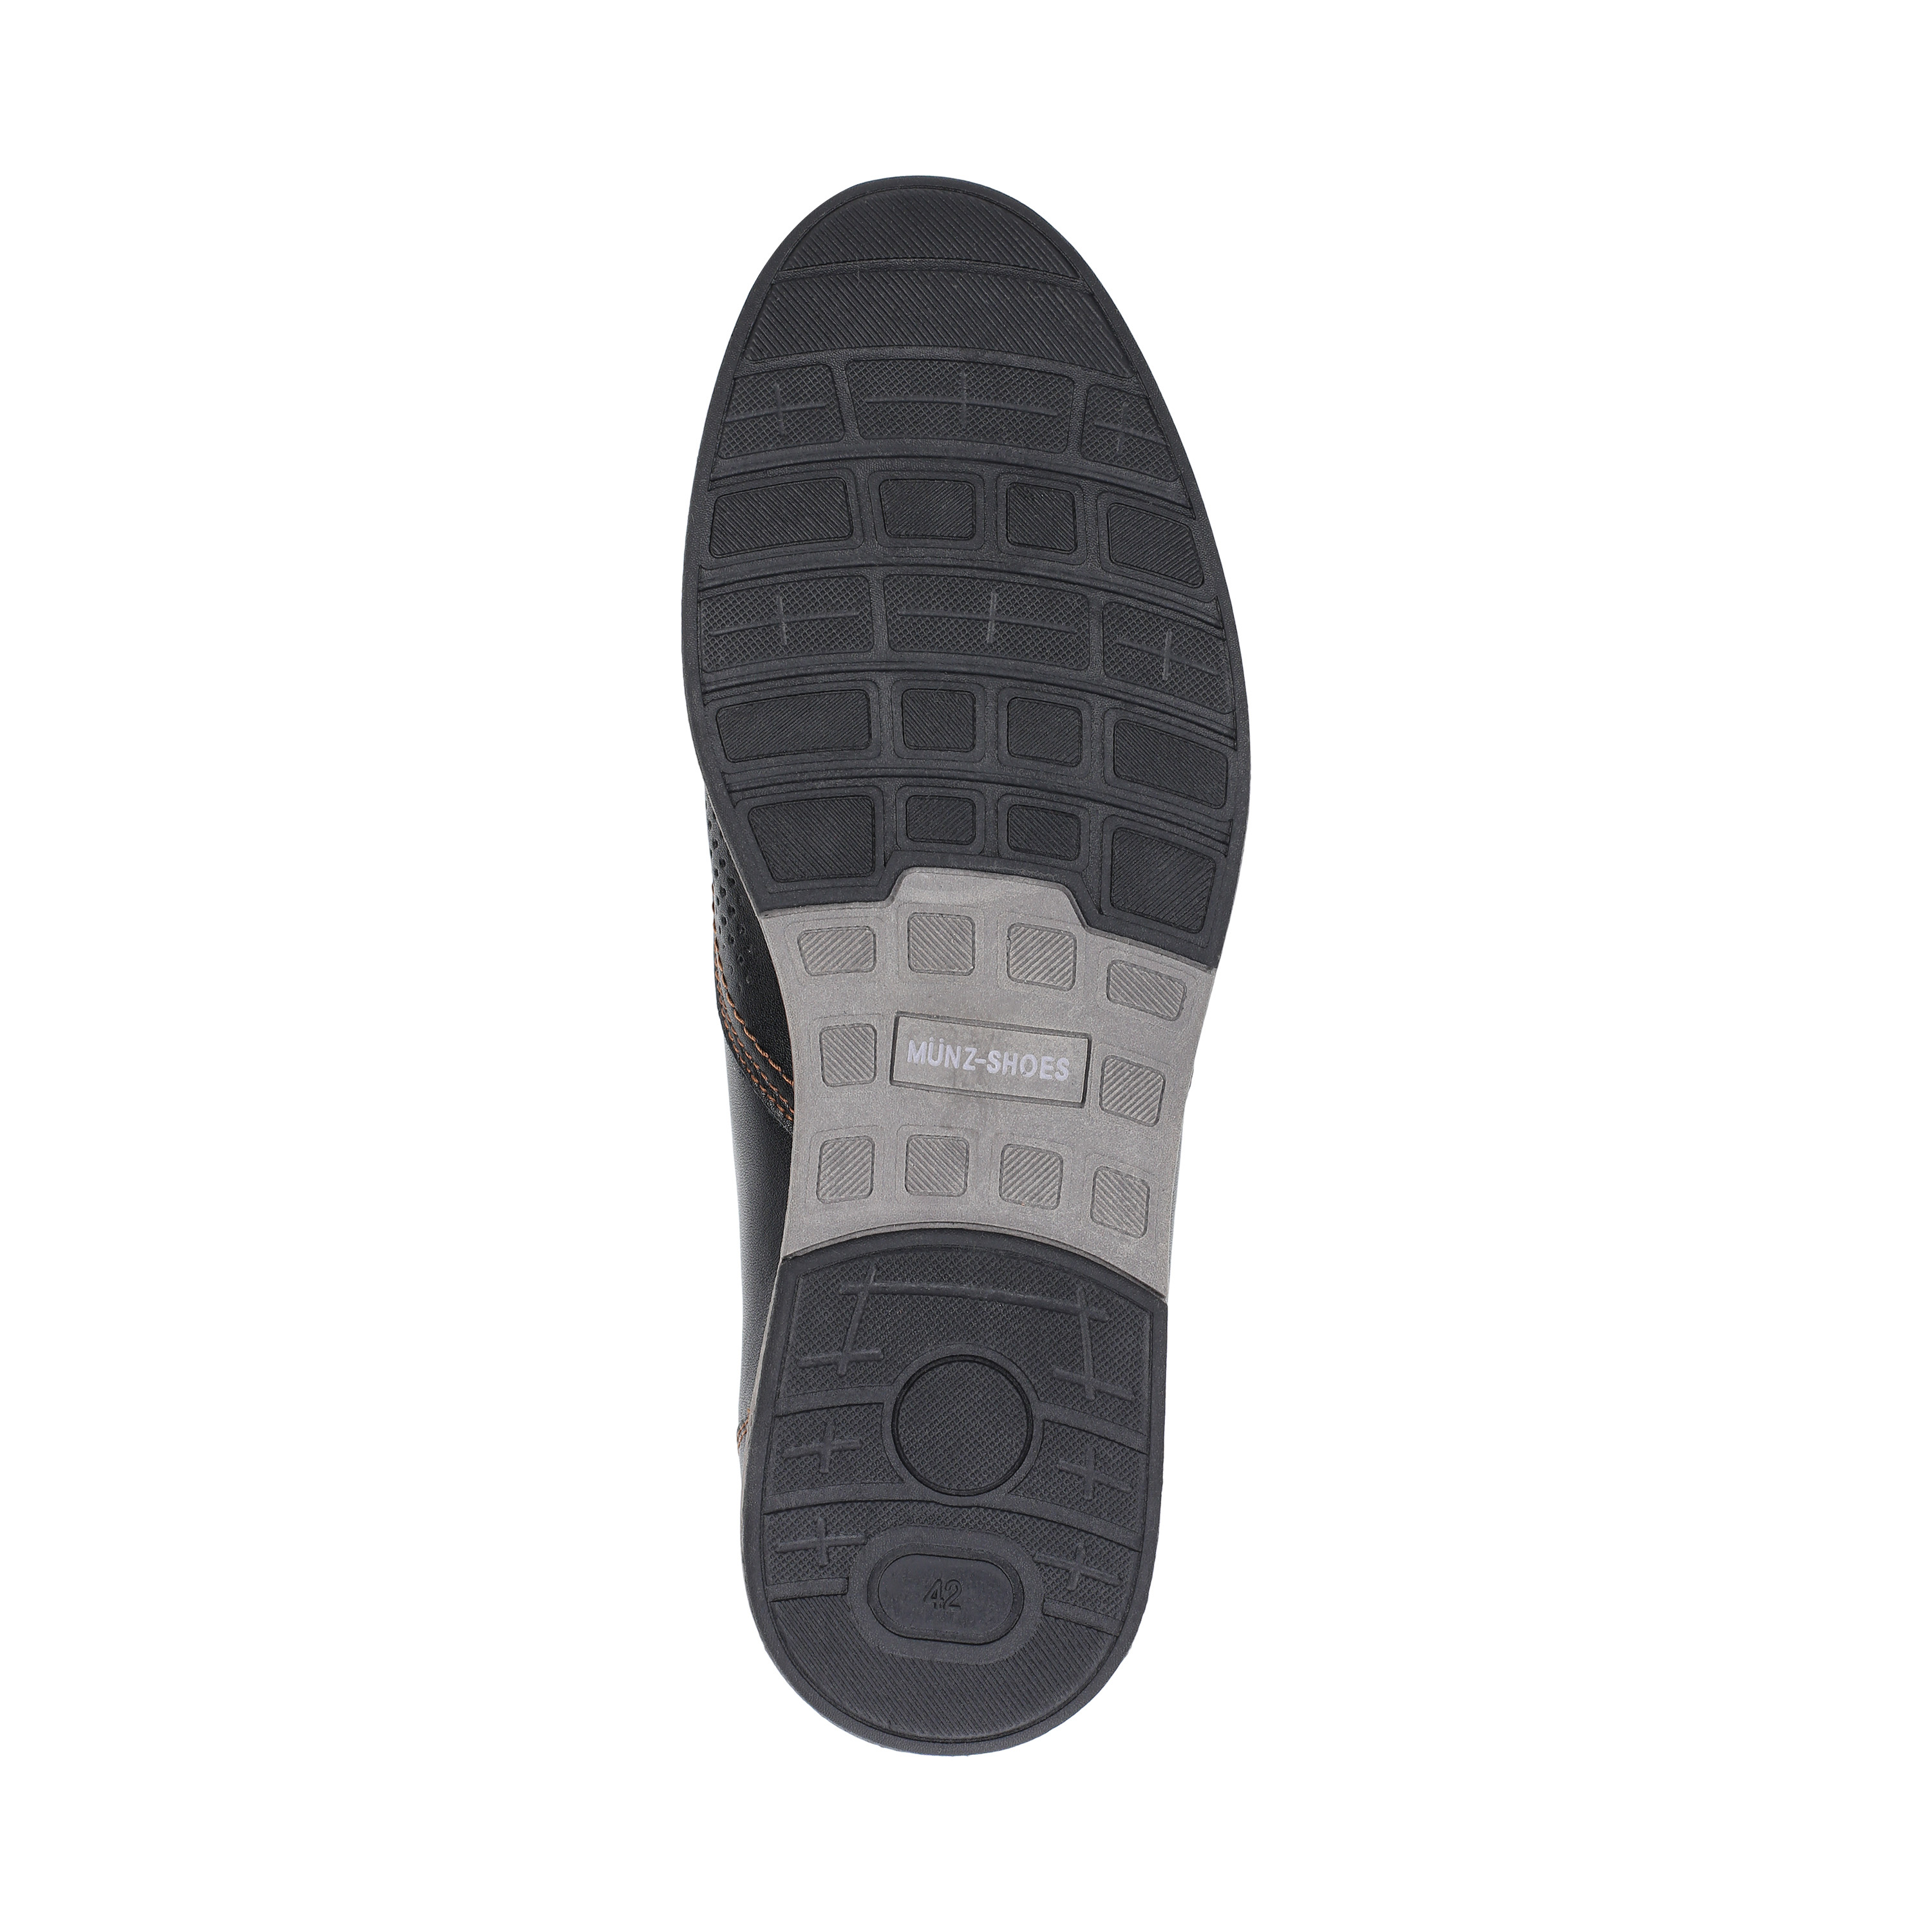 Полуботинки MUNZ Shoes 098-308A-1602 098-308A-1602, цвет черный, размер 42 туфли - фото 4